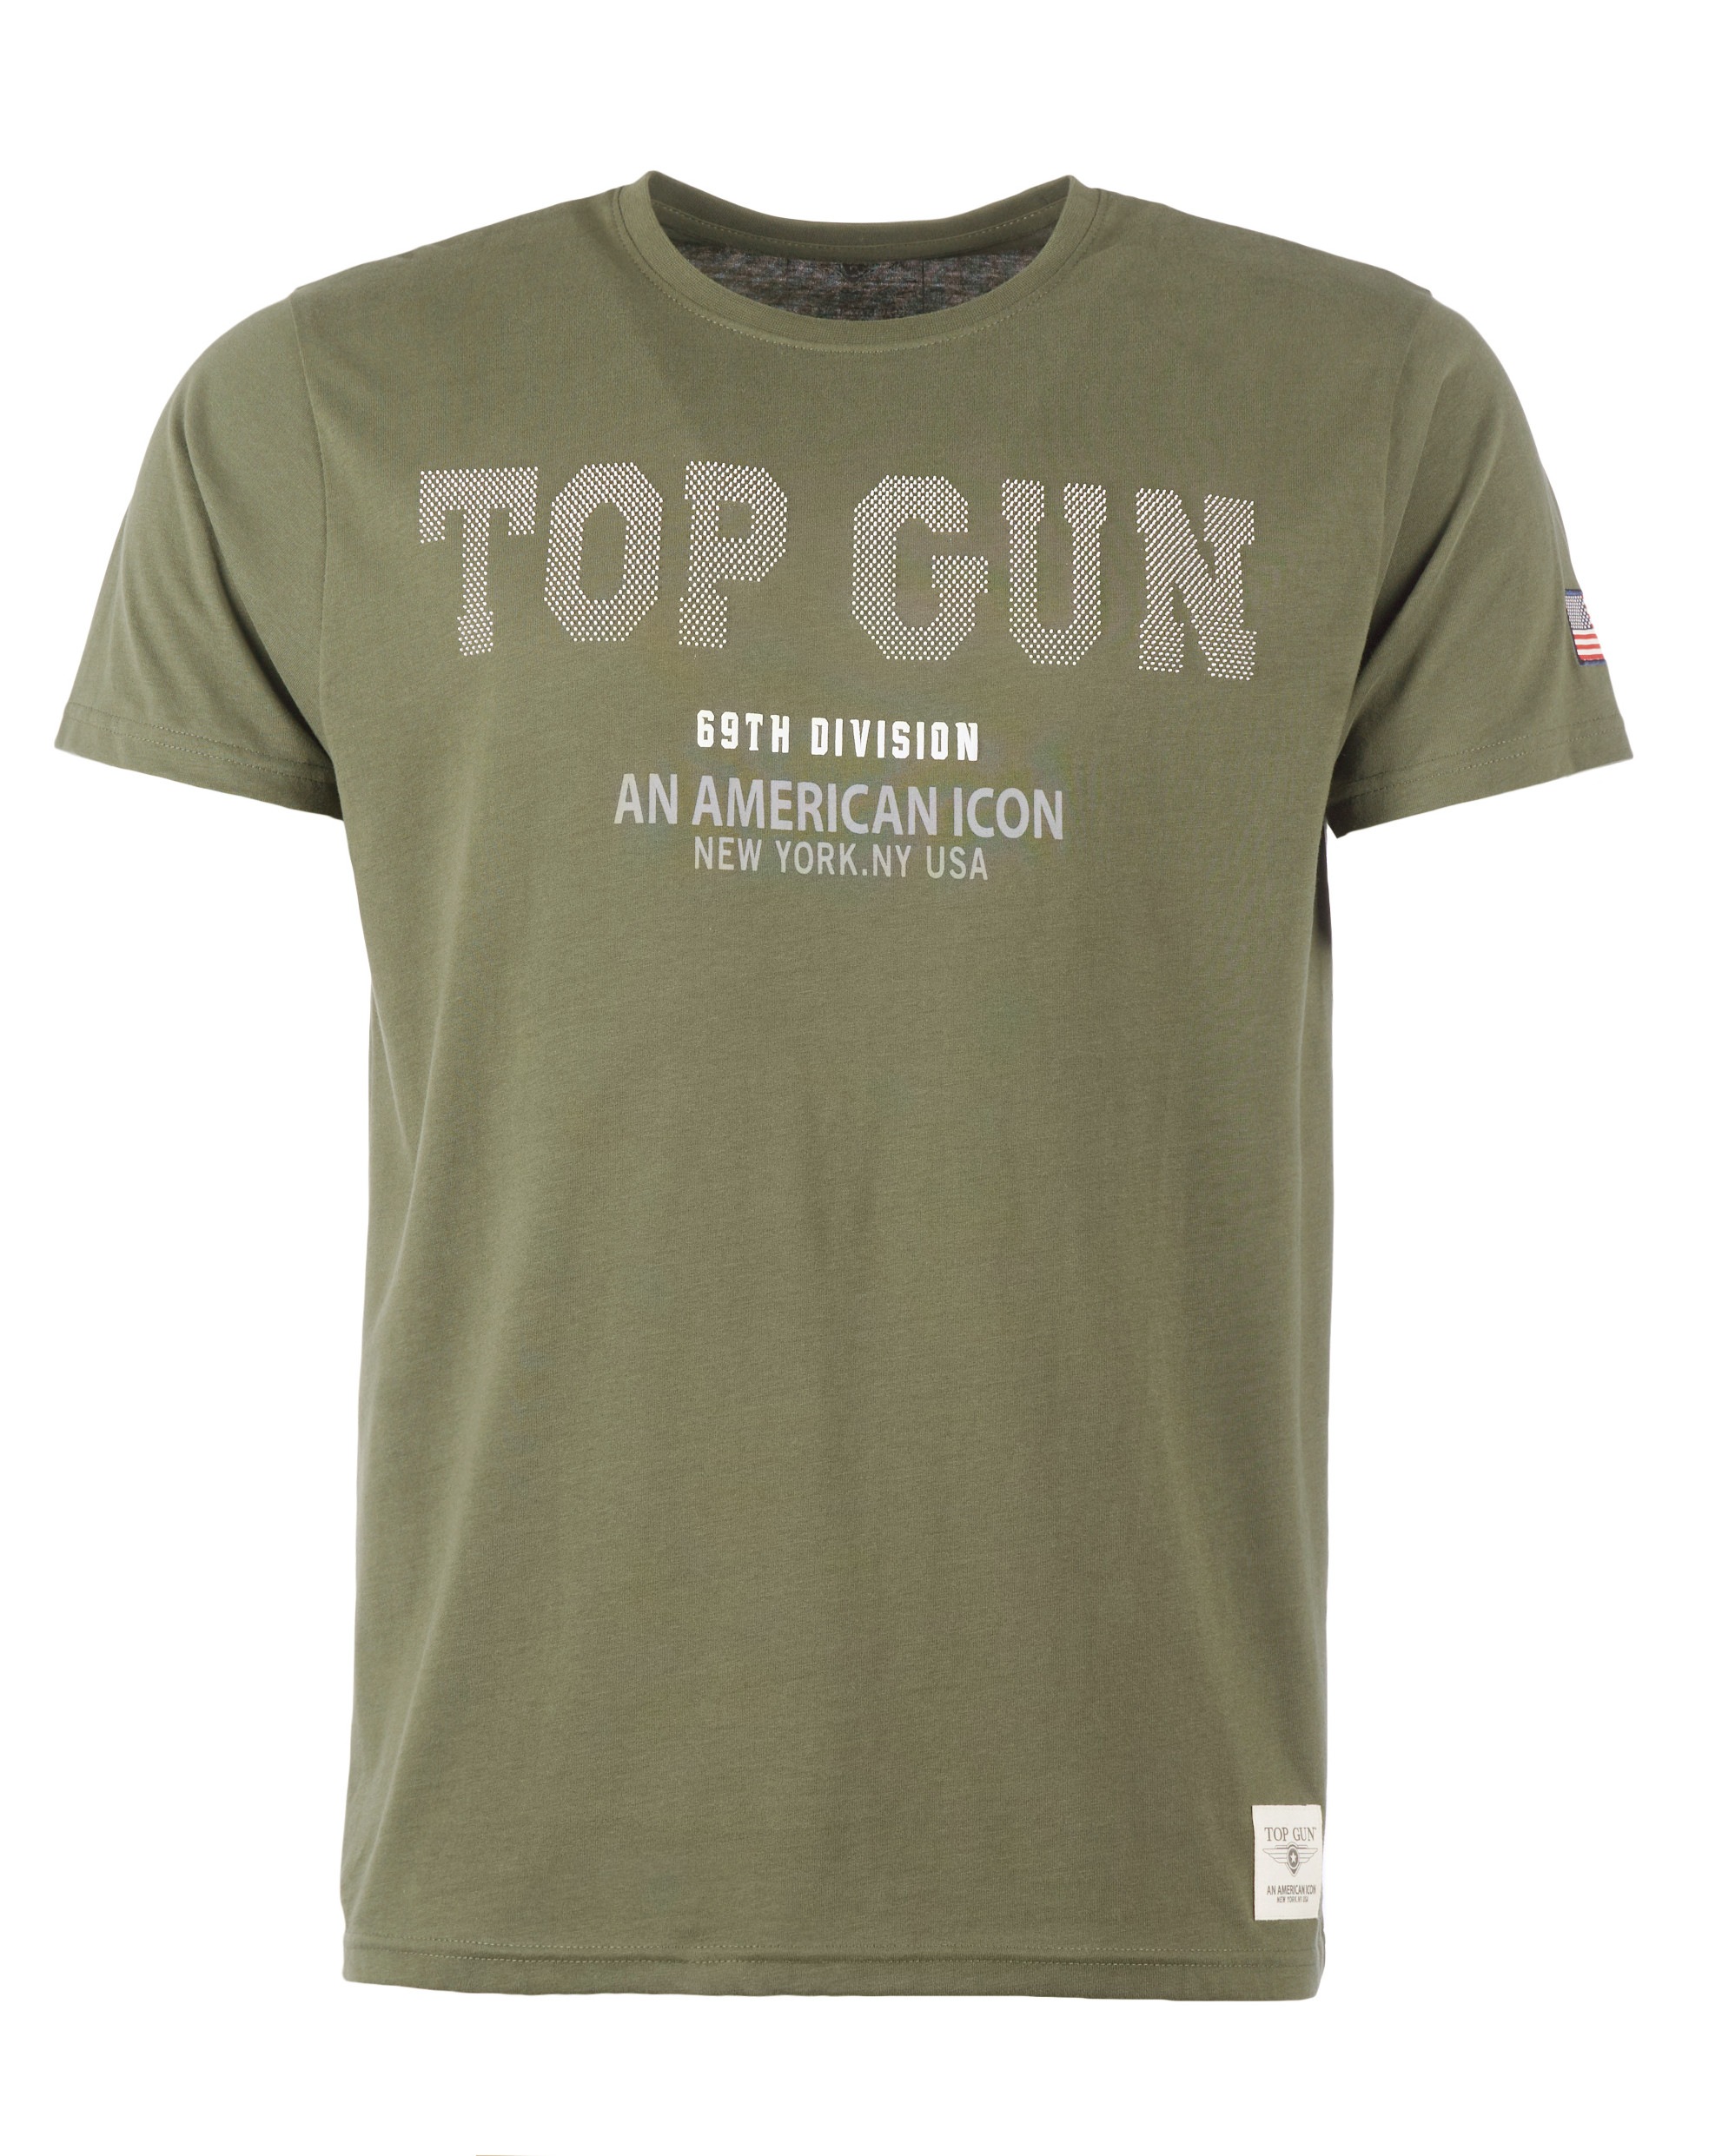 »T-Shirt TOP T-Shirt bei ♕ TG20213006« GUN